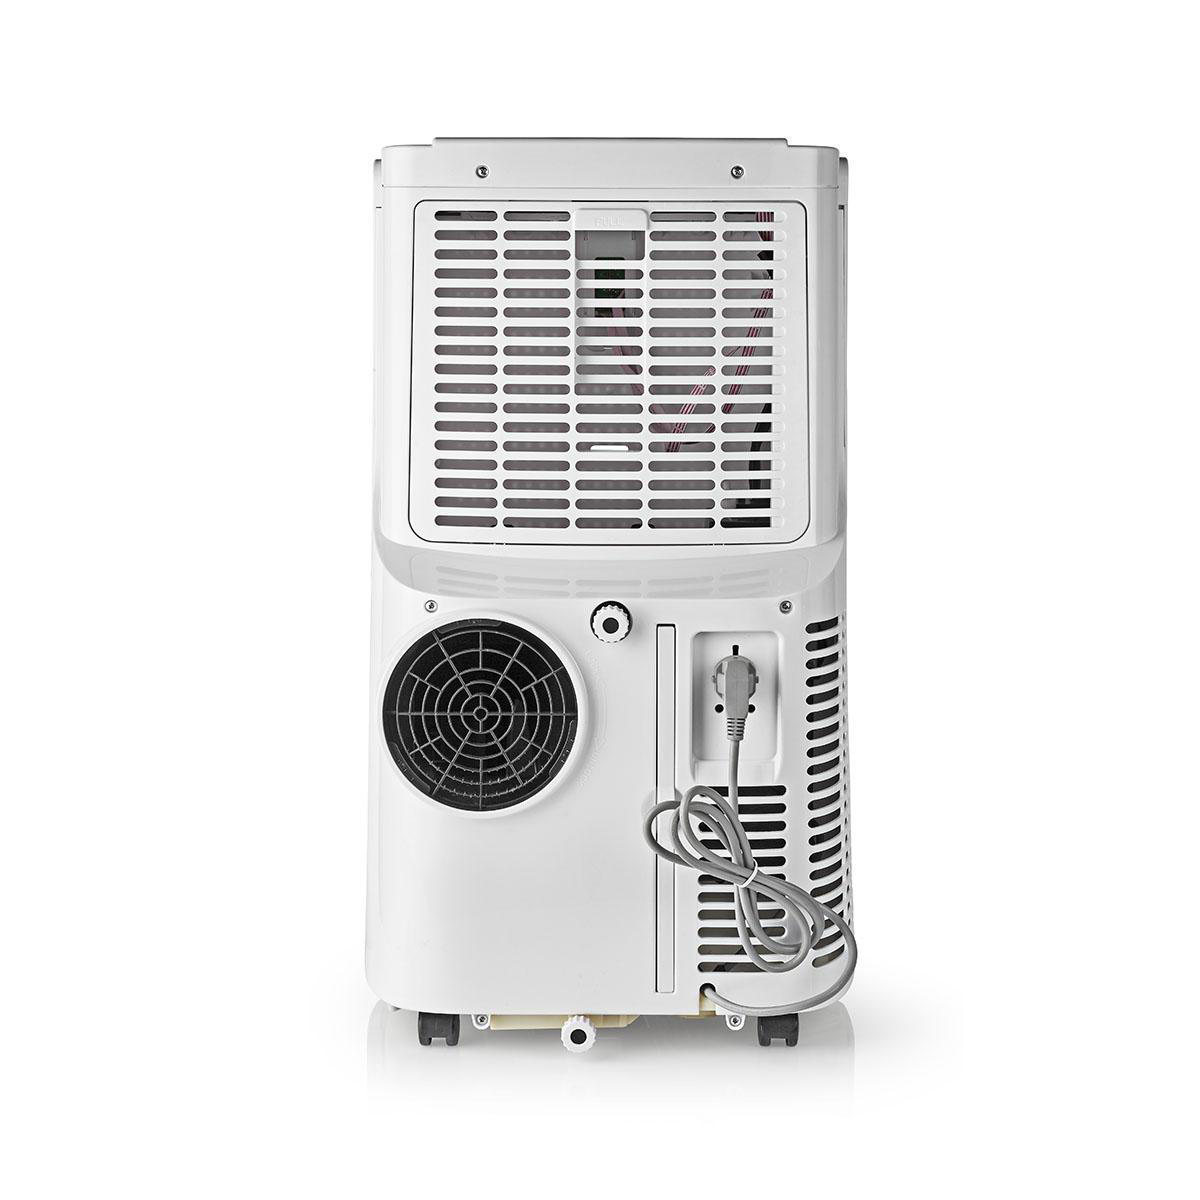 Nedis ACMB1WT9 Klima für 20 m² Mobile Air Conditioner | 9000 BTU | Energy Class A | Remote